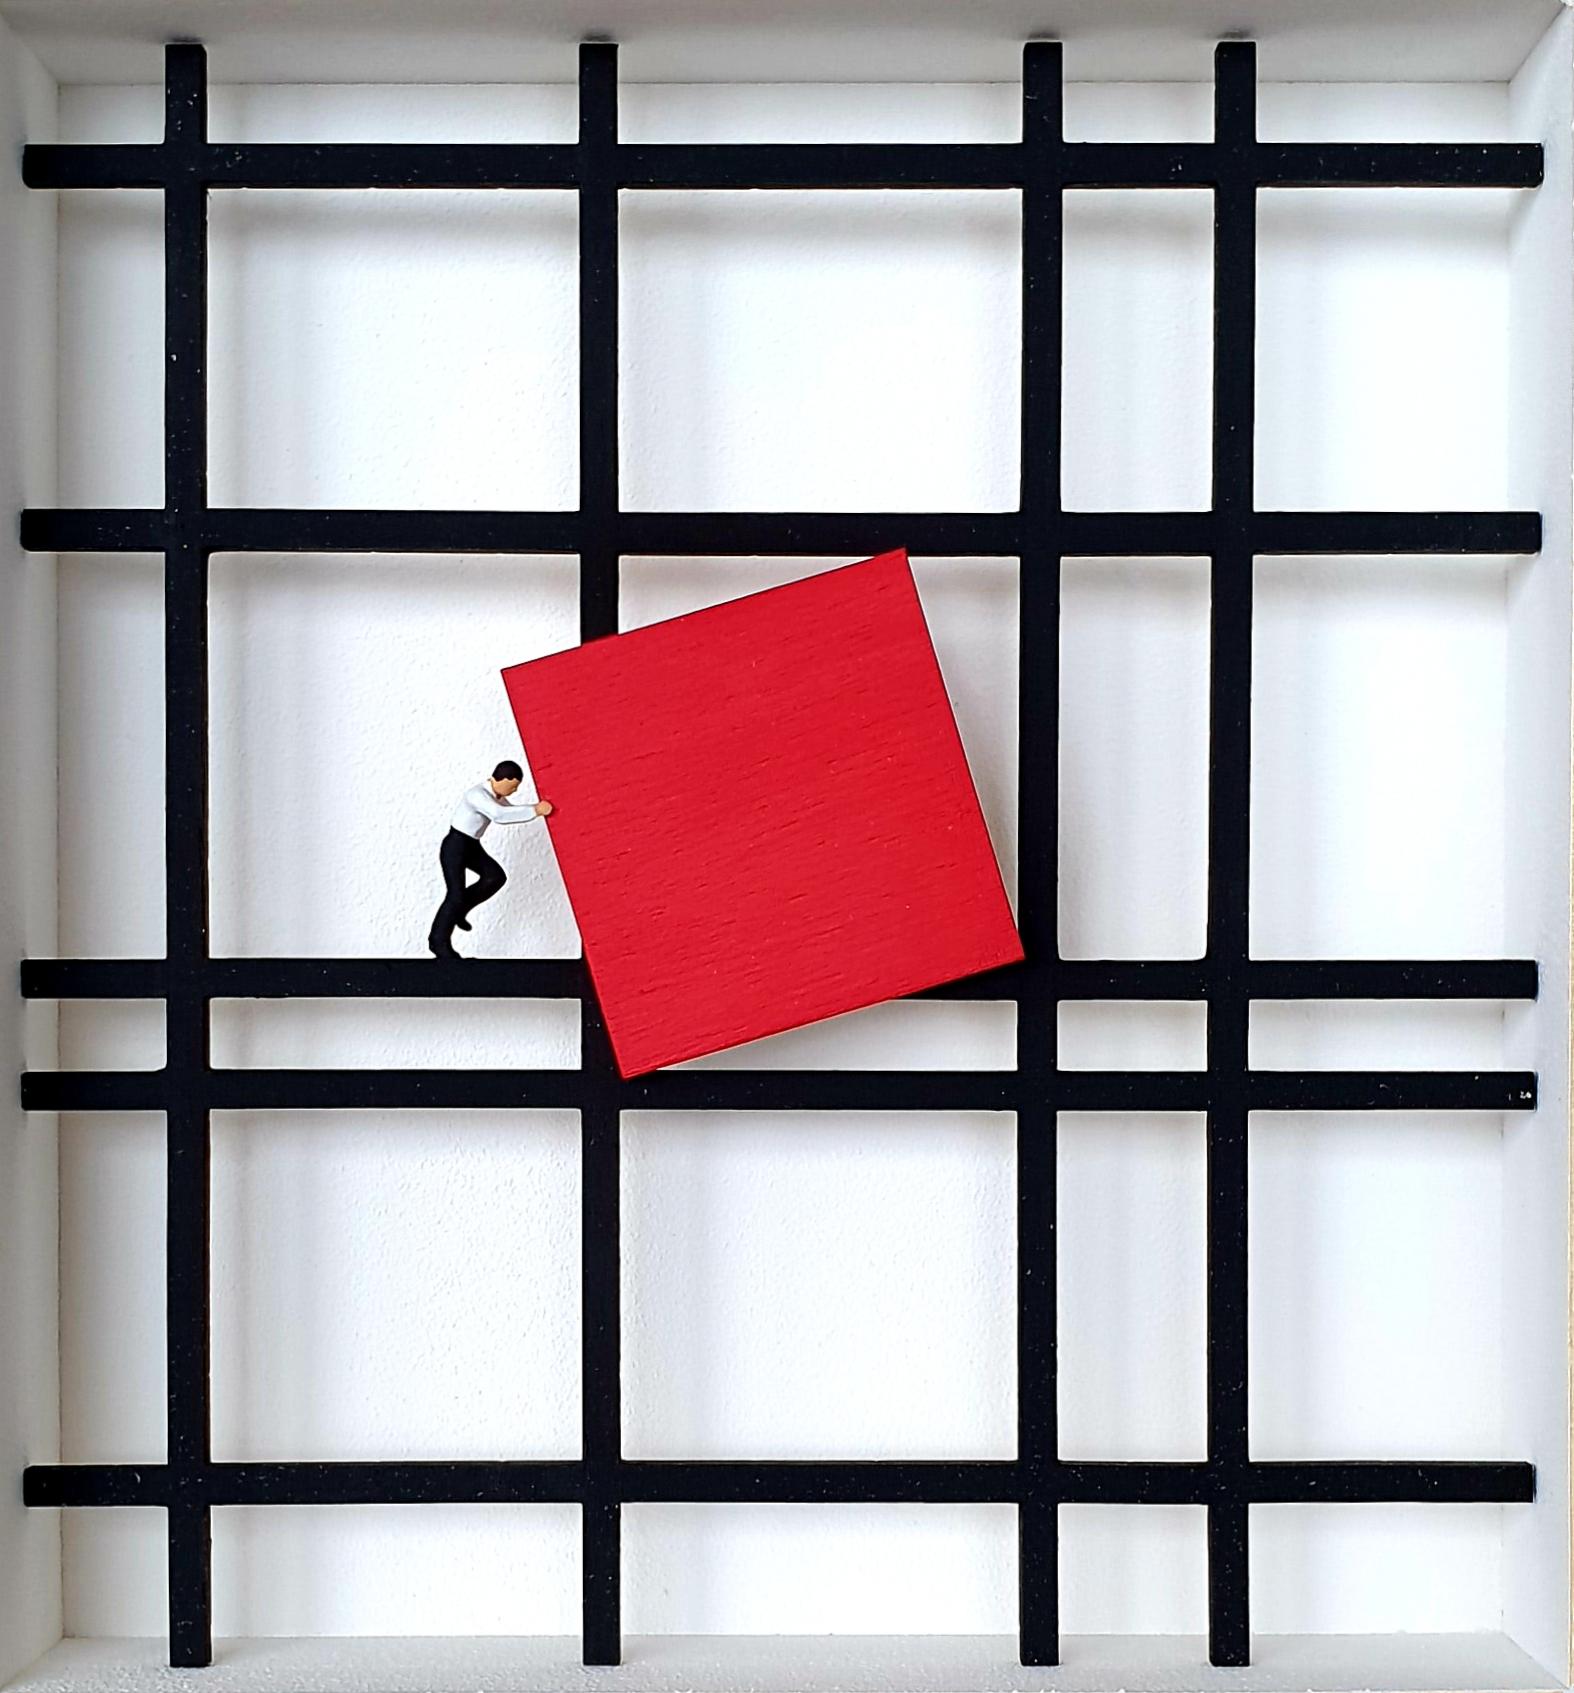 Hommage à Mondrian -Œuvre d'art contemporaine tombée, hommage au maître néerlandais du design